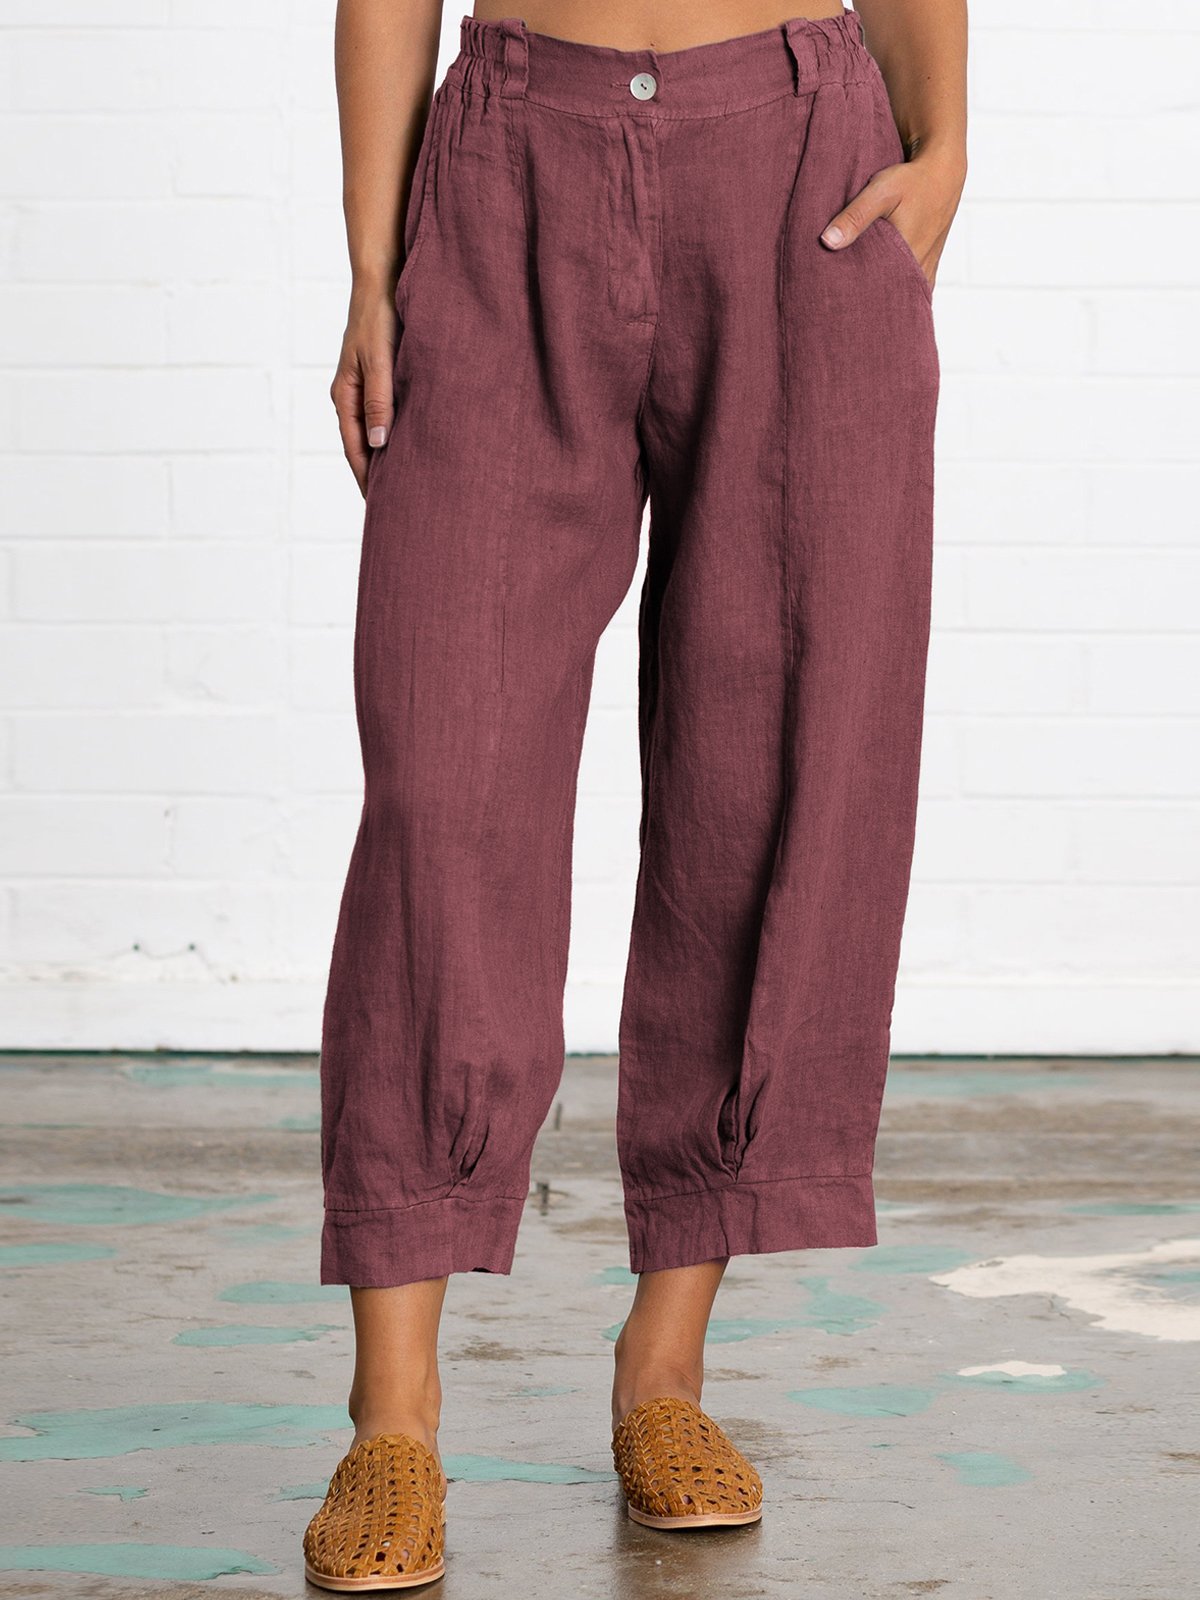 Plus Size Linen Women Loose Capri Pants With Pockets